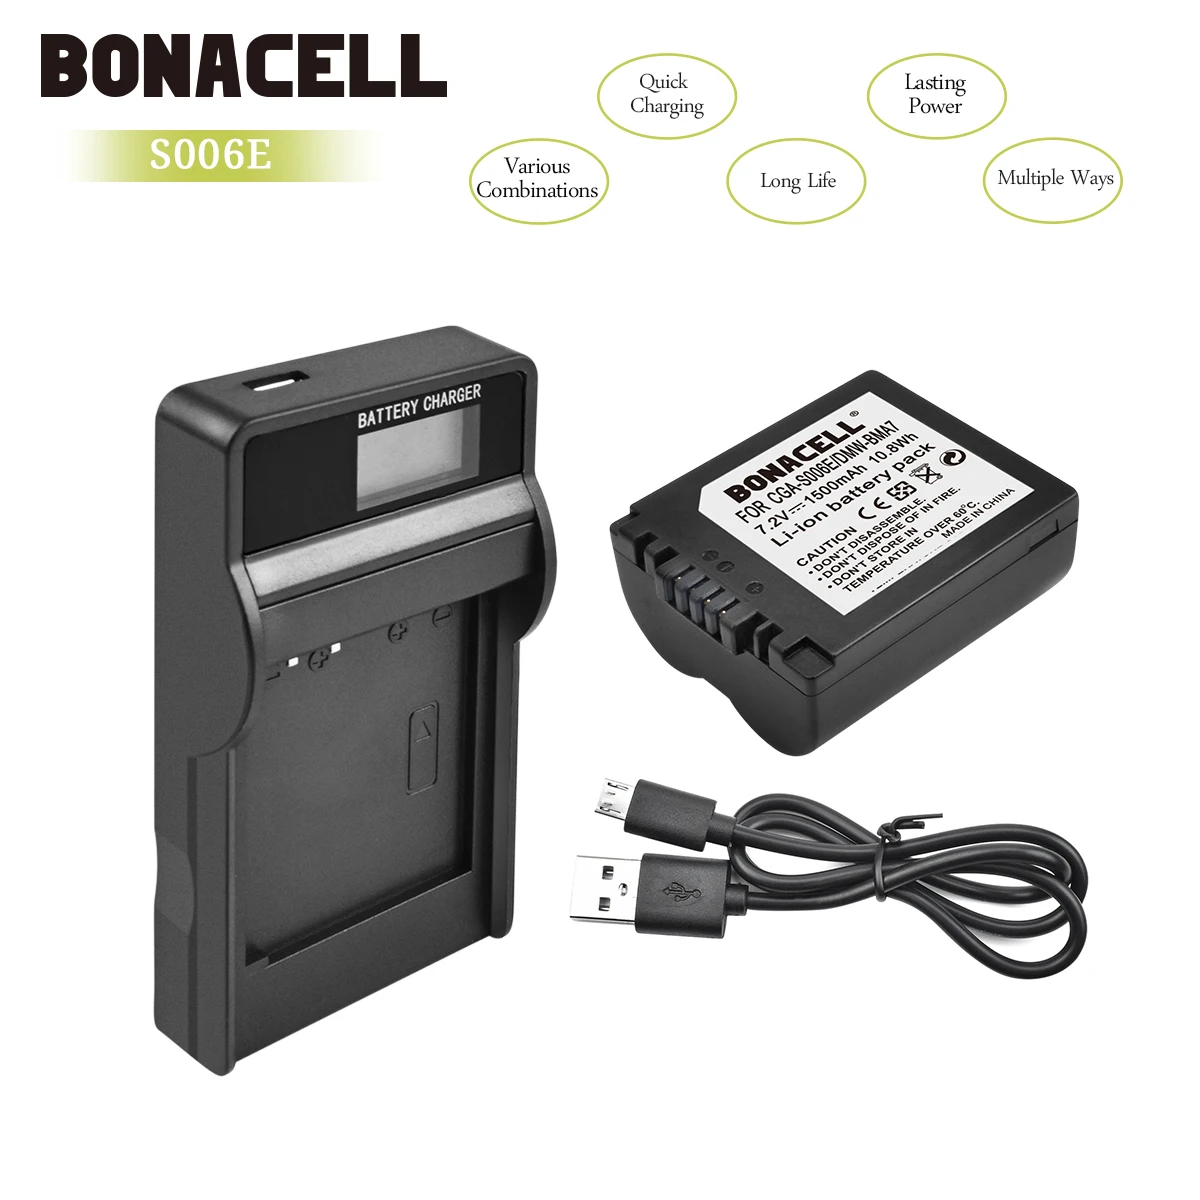 Bonacell 1500 мА/ч, CGA-S006 CGR CGA S006E S006A S006 DMW-BMA7 Батарея+ ЖК-дисплей Зарядное устройство для цифрового фотоаппарата Panasonic DMC FZ7 FZ8 FZ18 FZ28 FZ50 L50